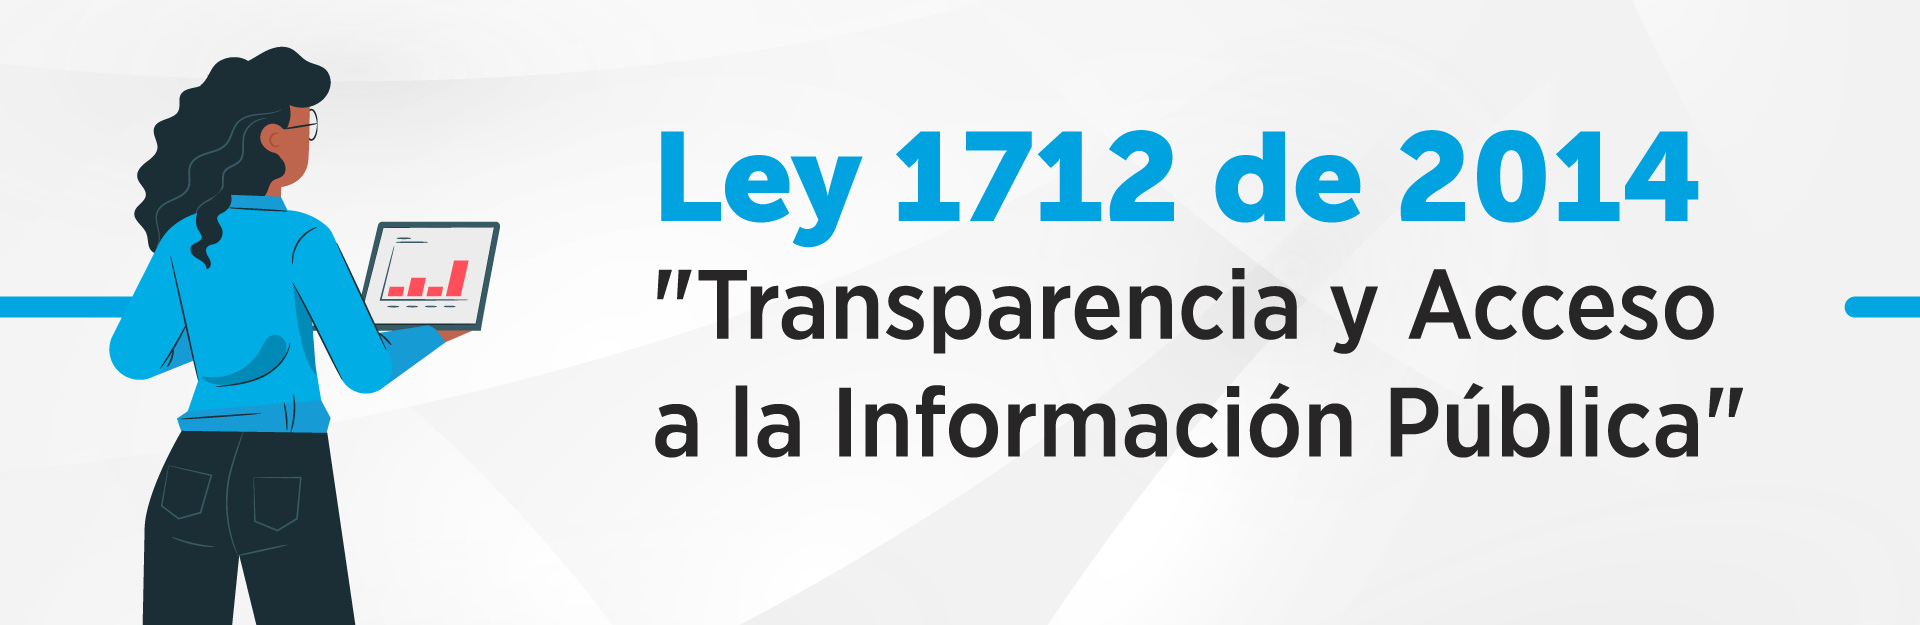 Ley 1712 de 2014 Ley de Transparencia y Acceso a la Información Pública